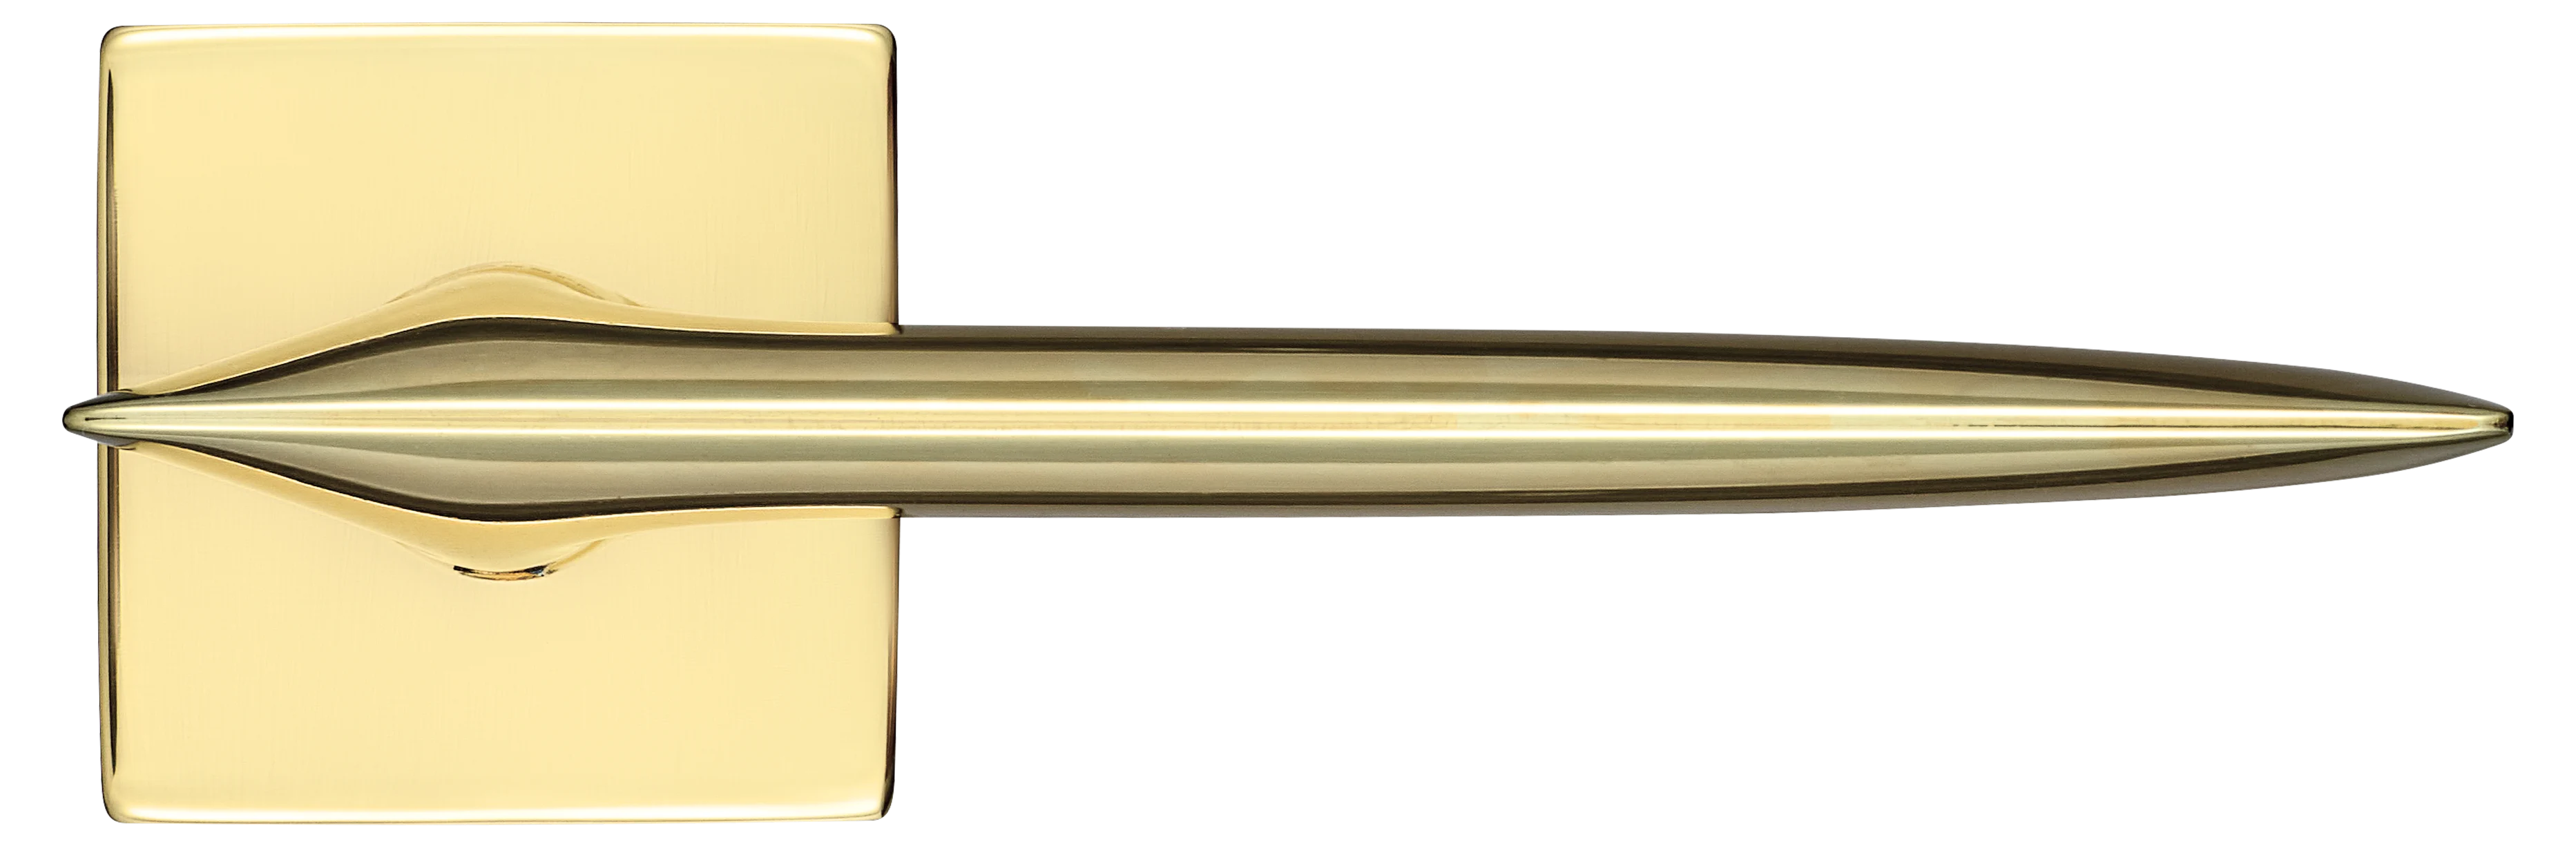 GALACTIC S5 OTL, ручка дверная, цвет -  золото фото купить в Саратове